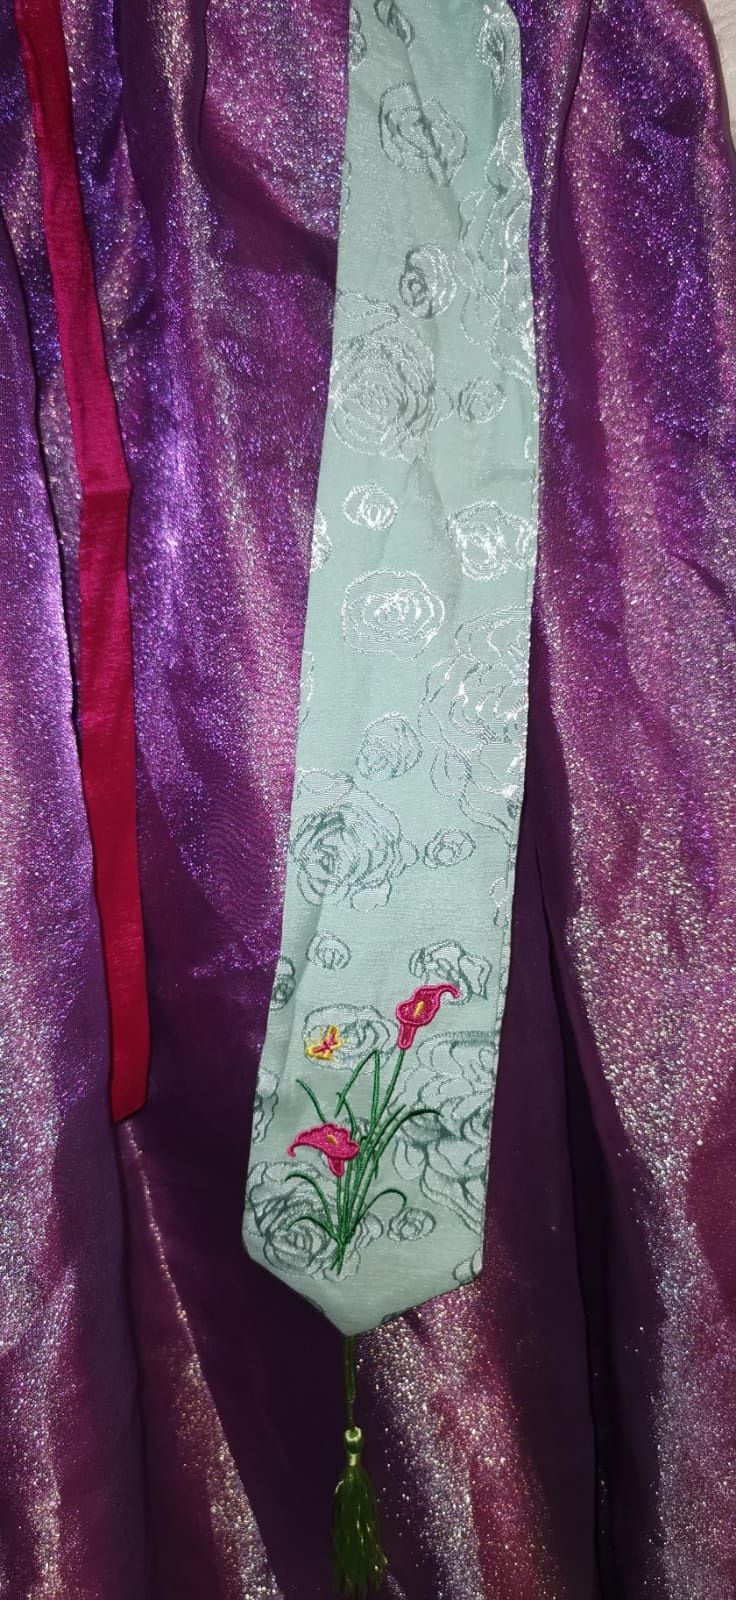 Hanbok - tradycyjny strój koreański (fioletowy)